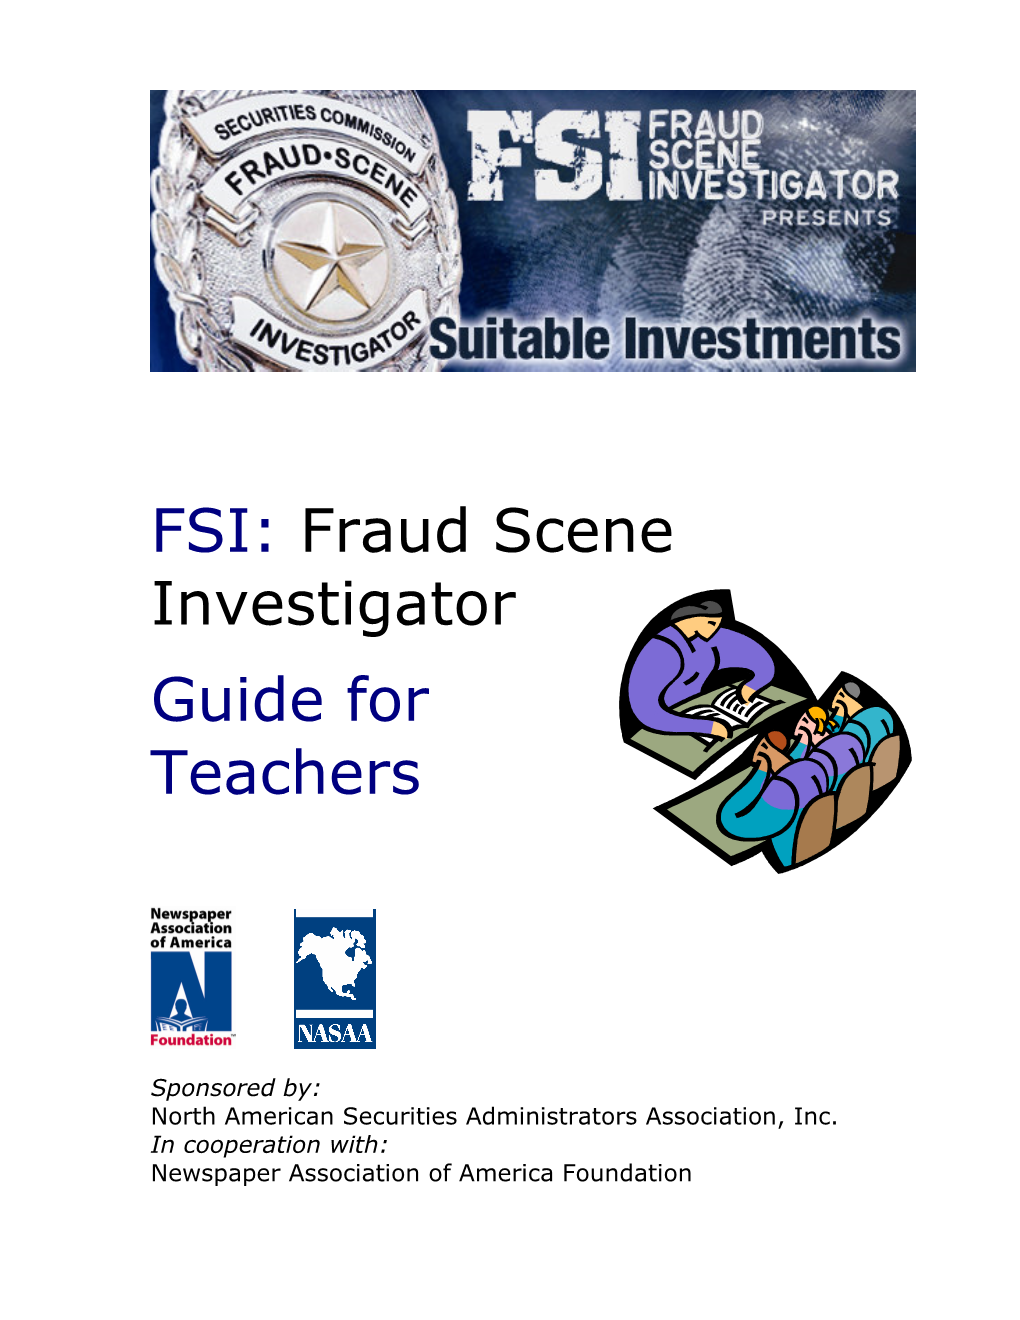 Fraud Scene Investigator Guide for Teachers